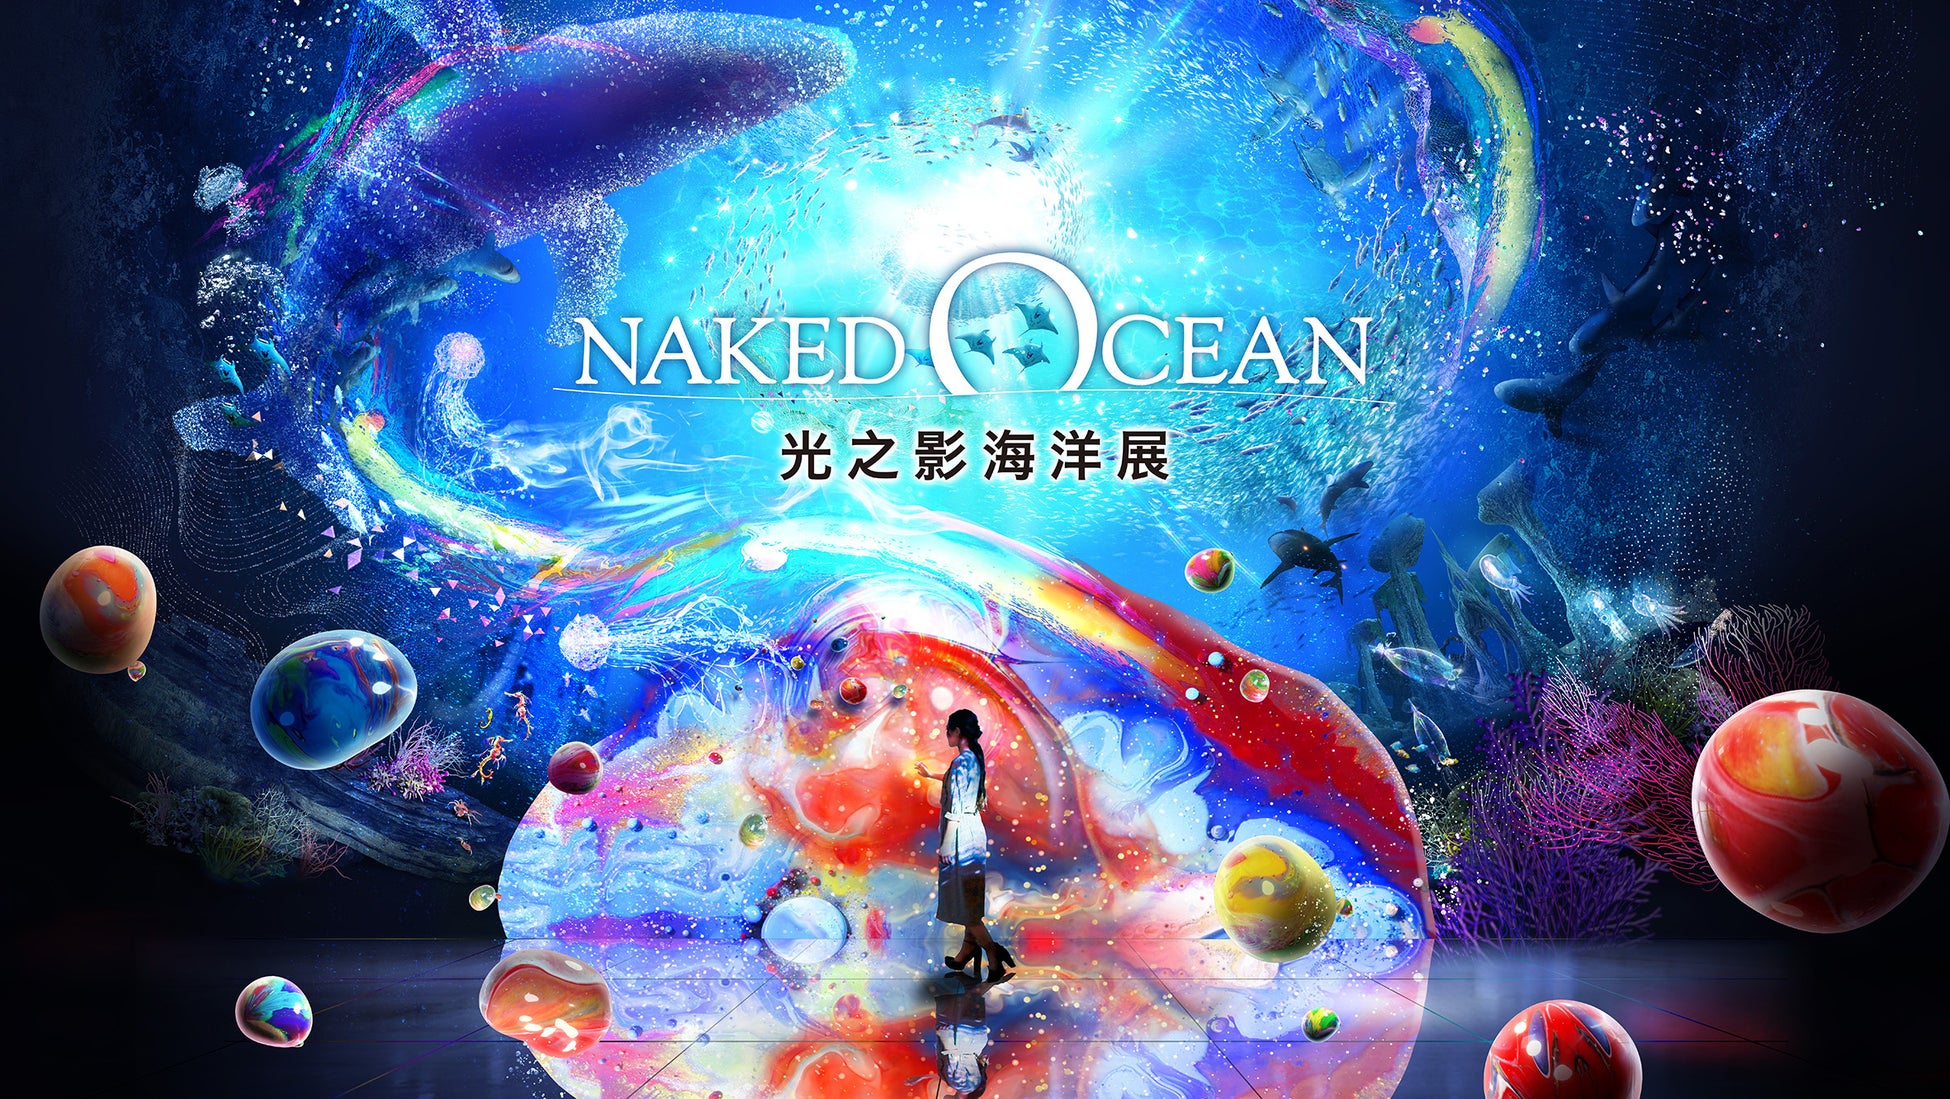 ネイキッドの人気デジタルアート展『NAKED OCEAN 』、台湾・台北で初開催のサブ画像1